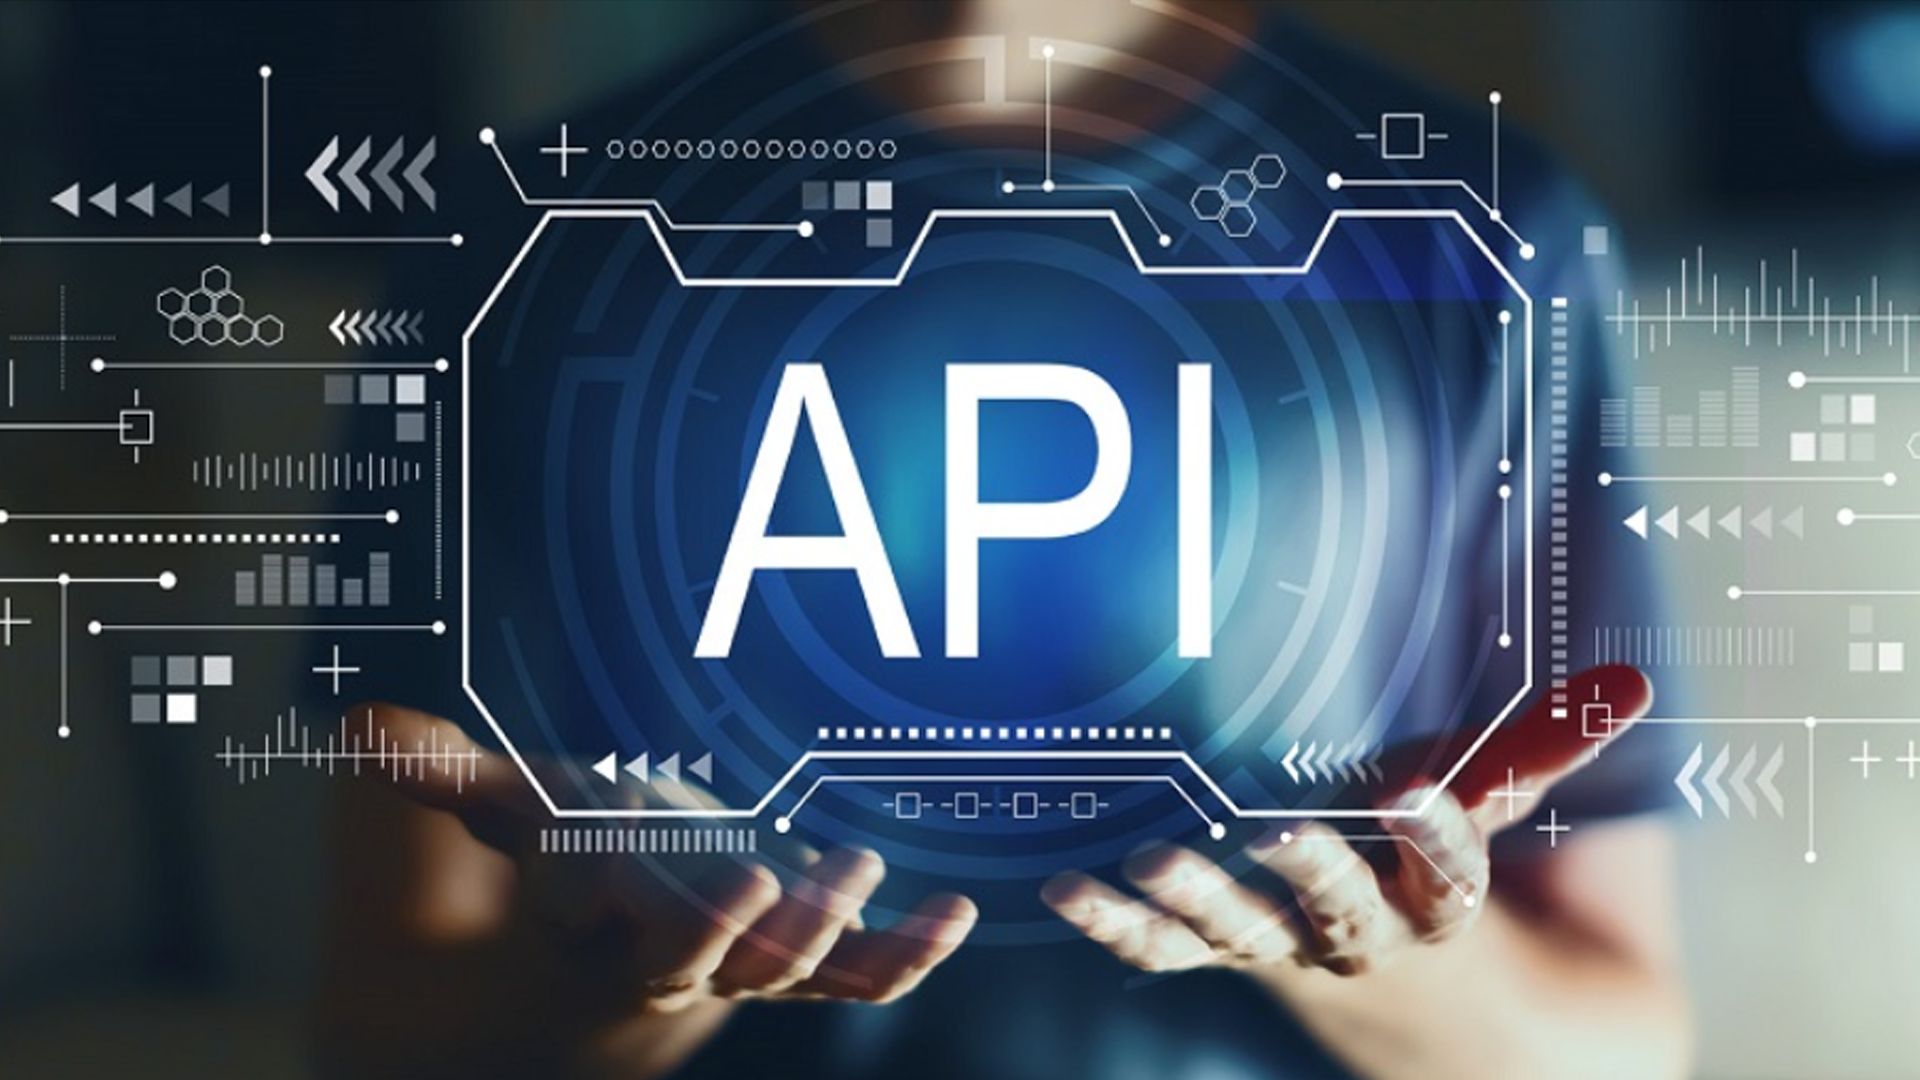 APIs impactando na performance das empresa, com a integração de APIs otimiza a gestão, fortalece as suas parcerias e aumenta o seu alcance.